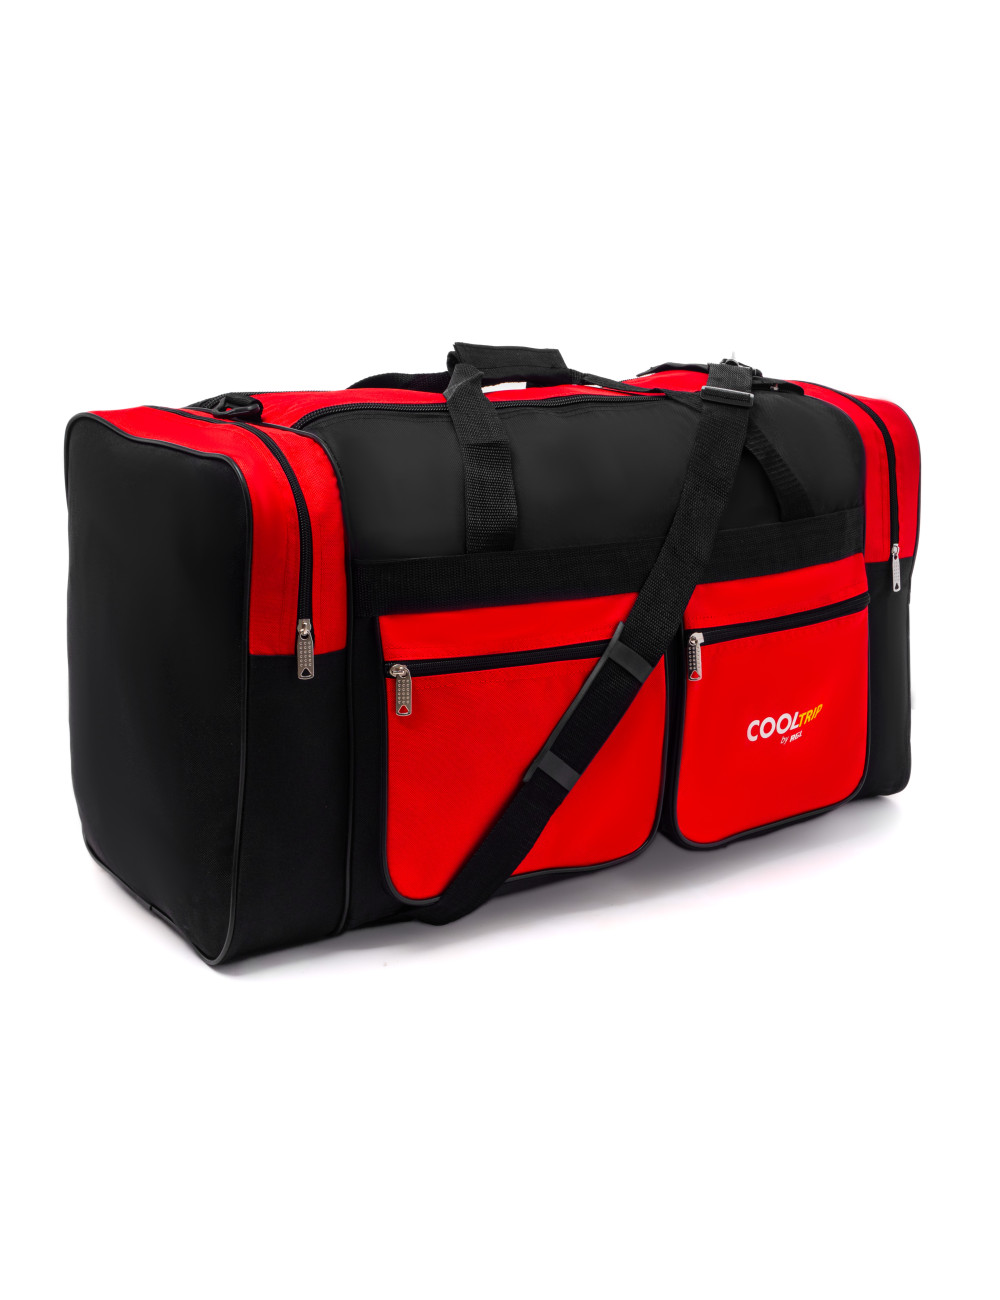 Duża, pojemna torba podróżna model 17 - czarno-czerwona